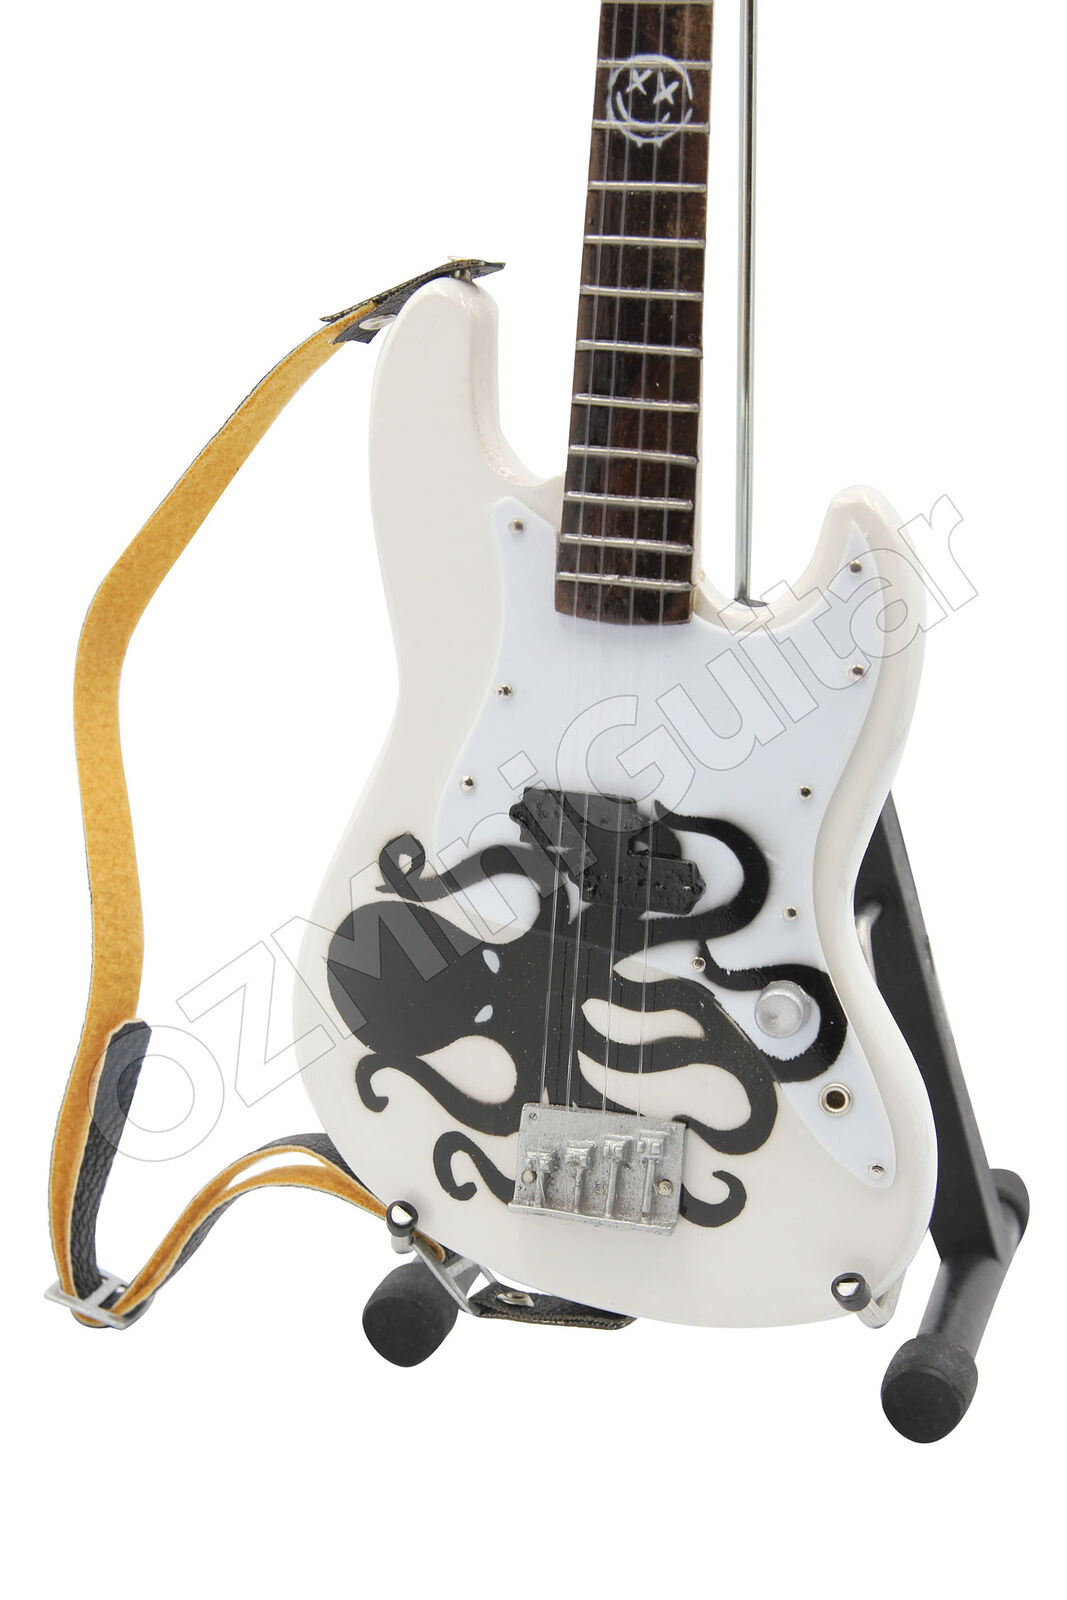 Miniature Bass Guitar Mark Hoppus Blink-182 White Octopus & Strap